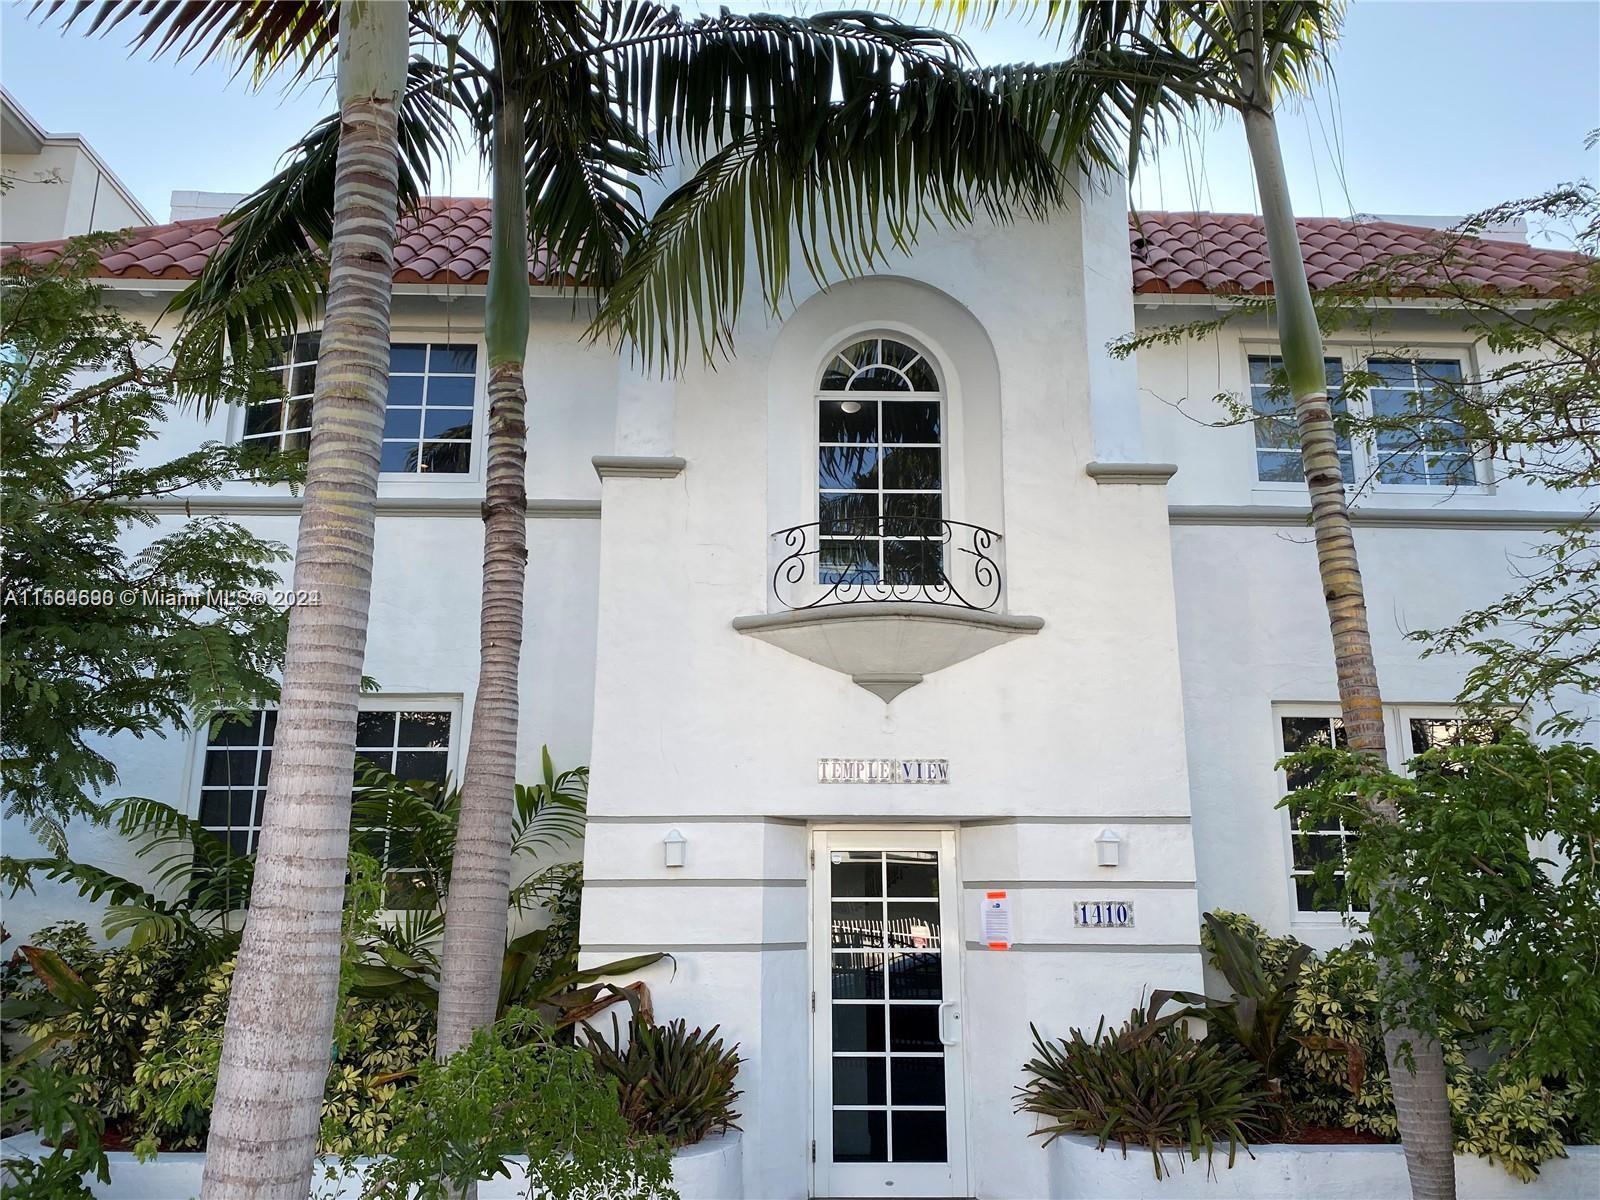 Rental Property at 1410 Euclid Ave 4, Miami Beach, Miami-Dade County, Florida - Bedrooms: 2 
Bathrooms: 2  - $3,400 MO.